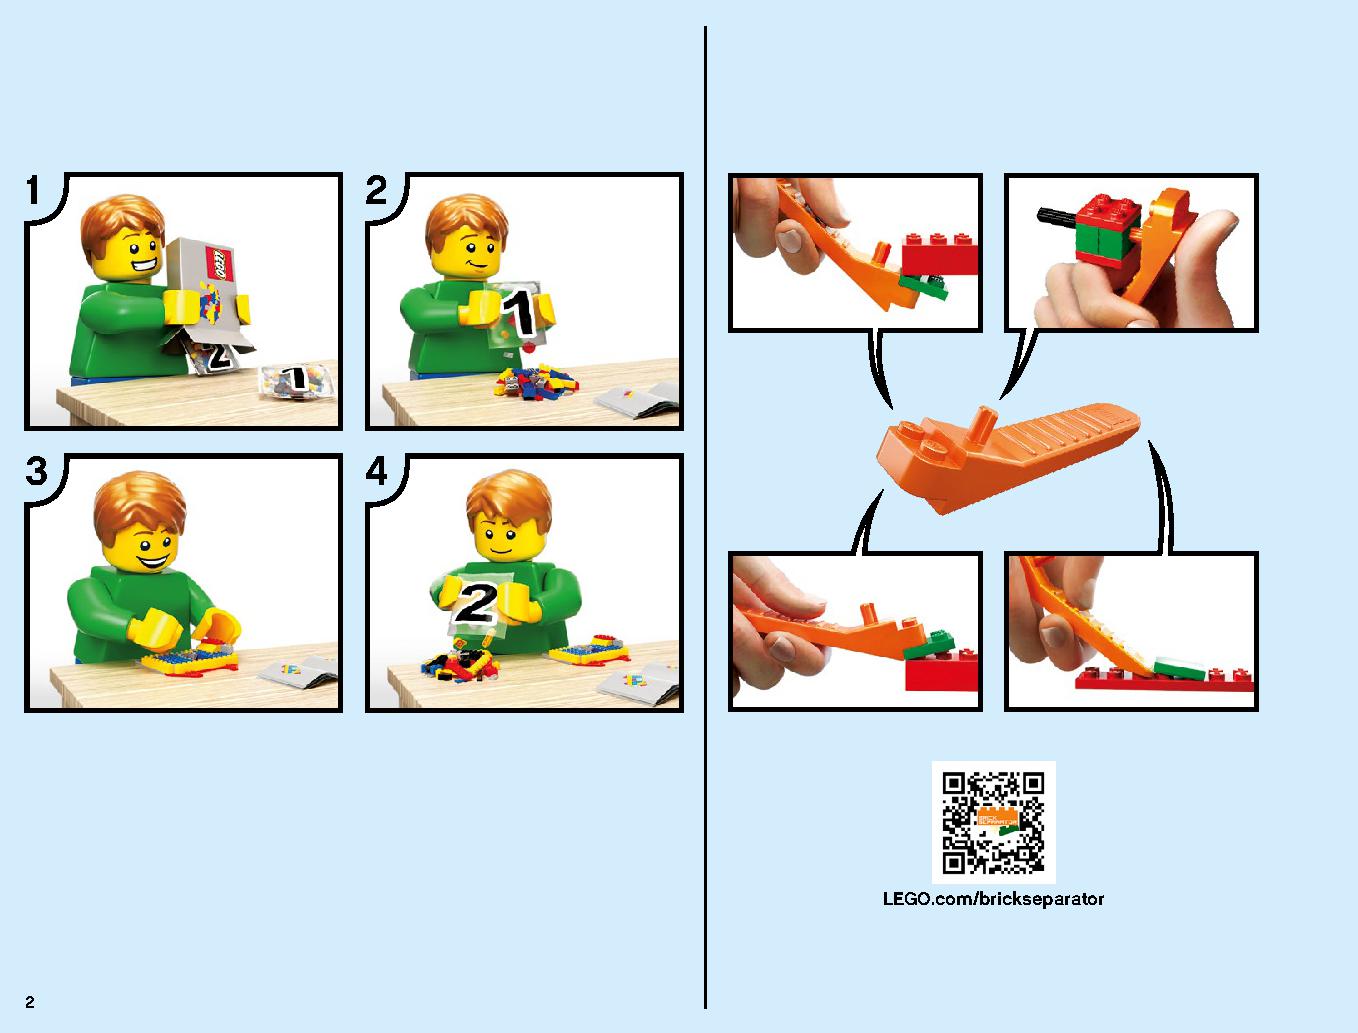 ニンジャ道場 70670 レゴの商品情報 レゴの説明書・組立方法 2 page